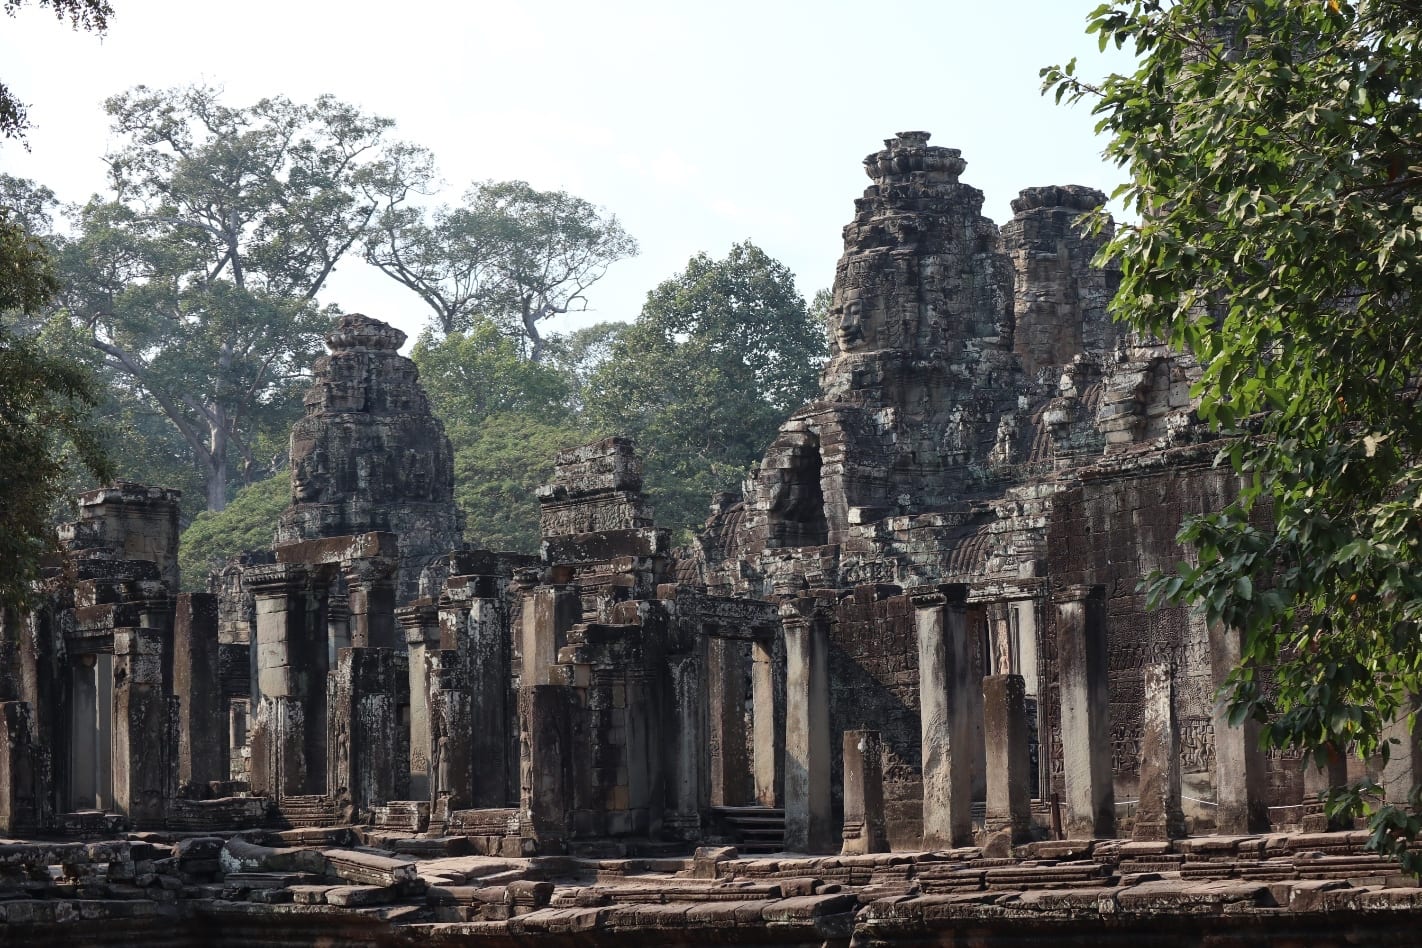 Bayon Temple near Siem Reap